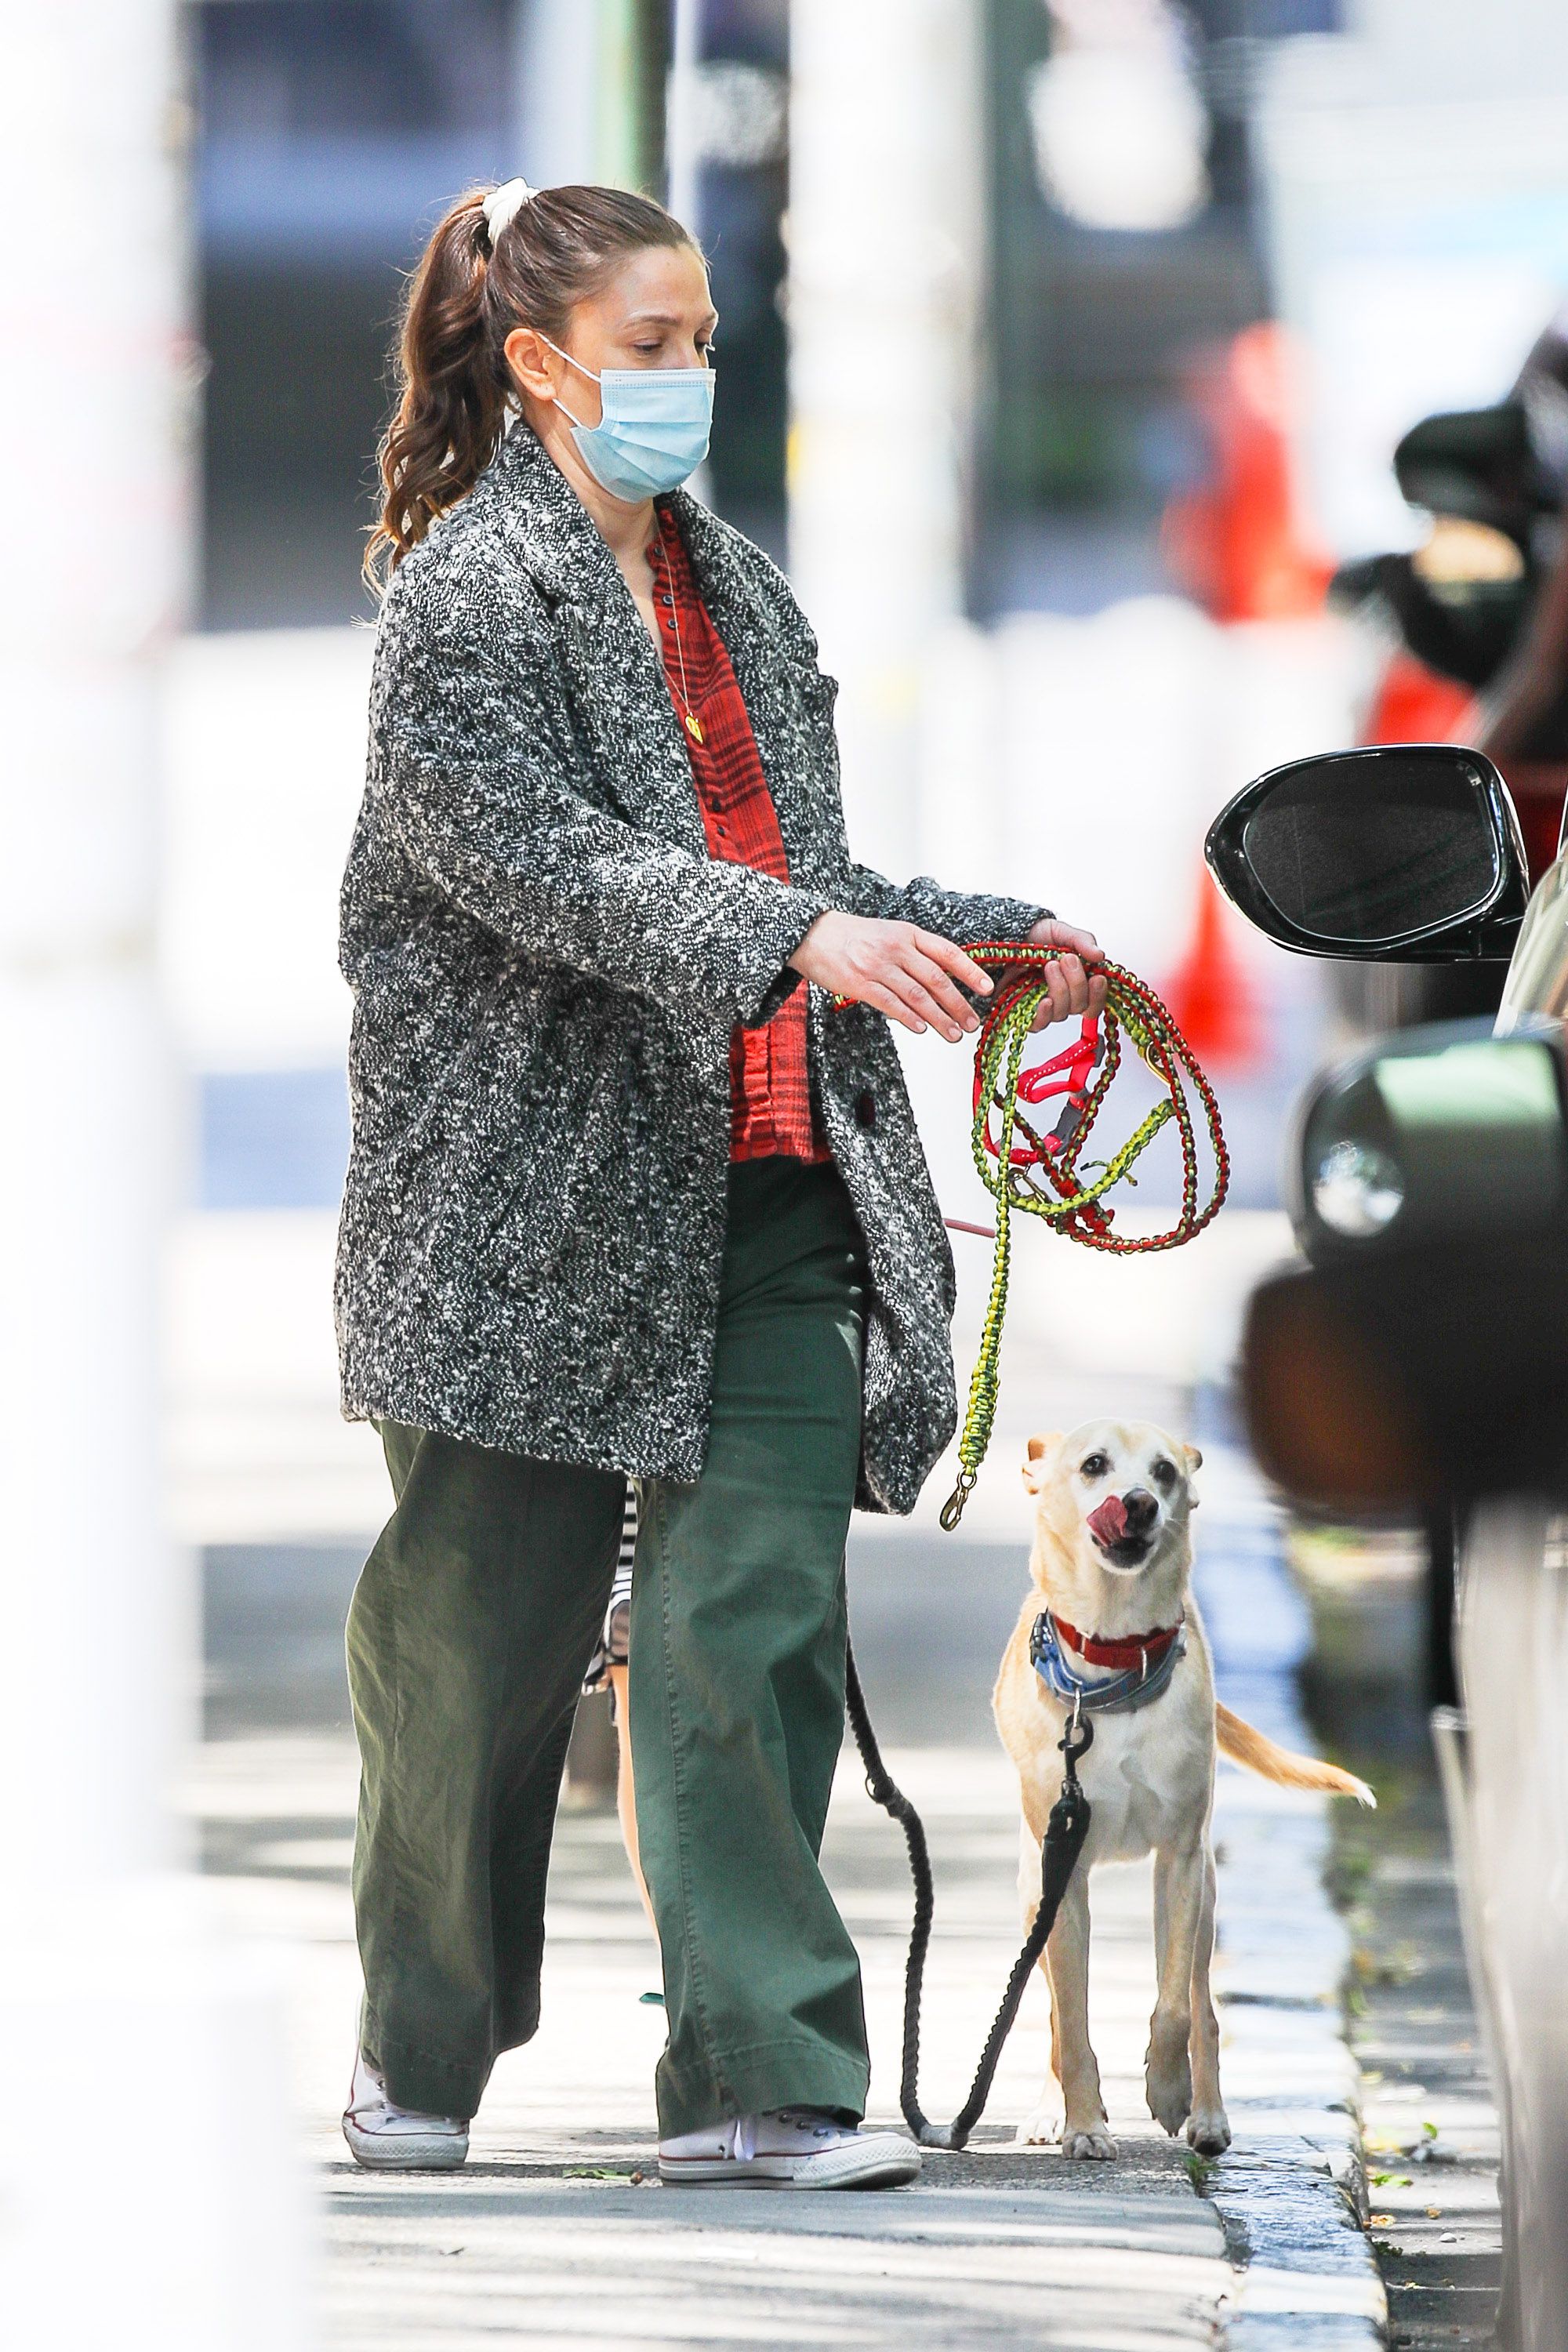 Drew Barrymore sacó a pasear a su perro por las calles de Nueva York y aprovechó para tomar aire fresco. Llevó puesto un pantalón verde, una camisa roja y negra y un tapado gris. Además, utilizó su correspondiente tapabocas (Fotos: The Grosby Group)